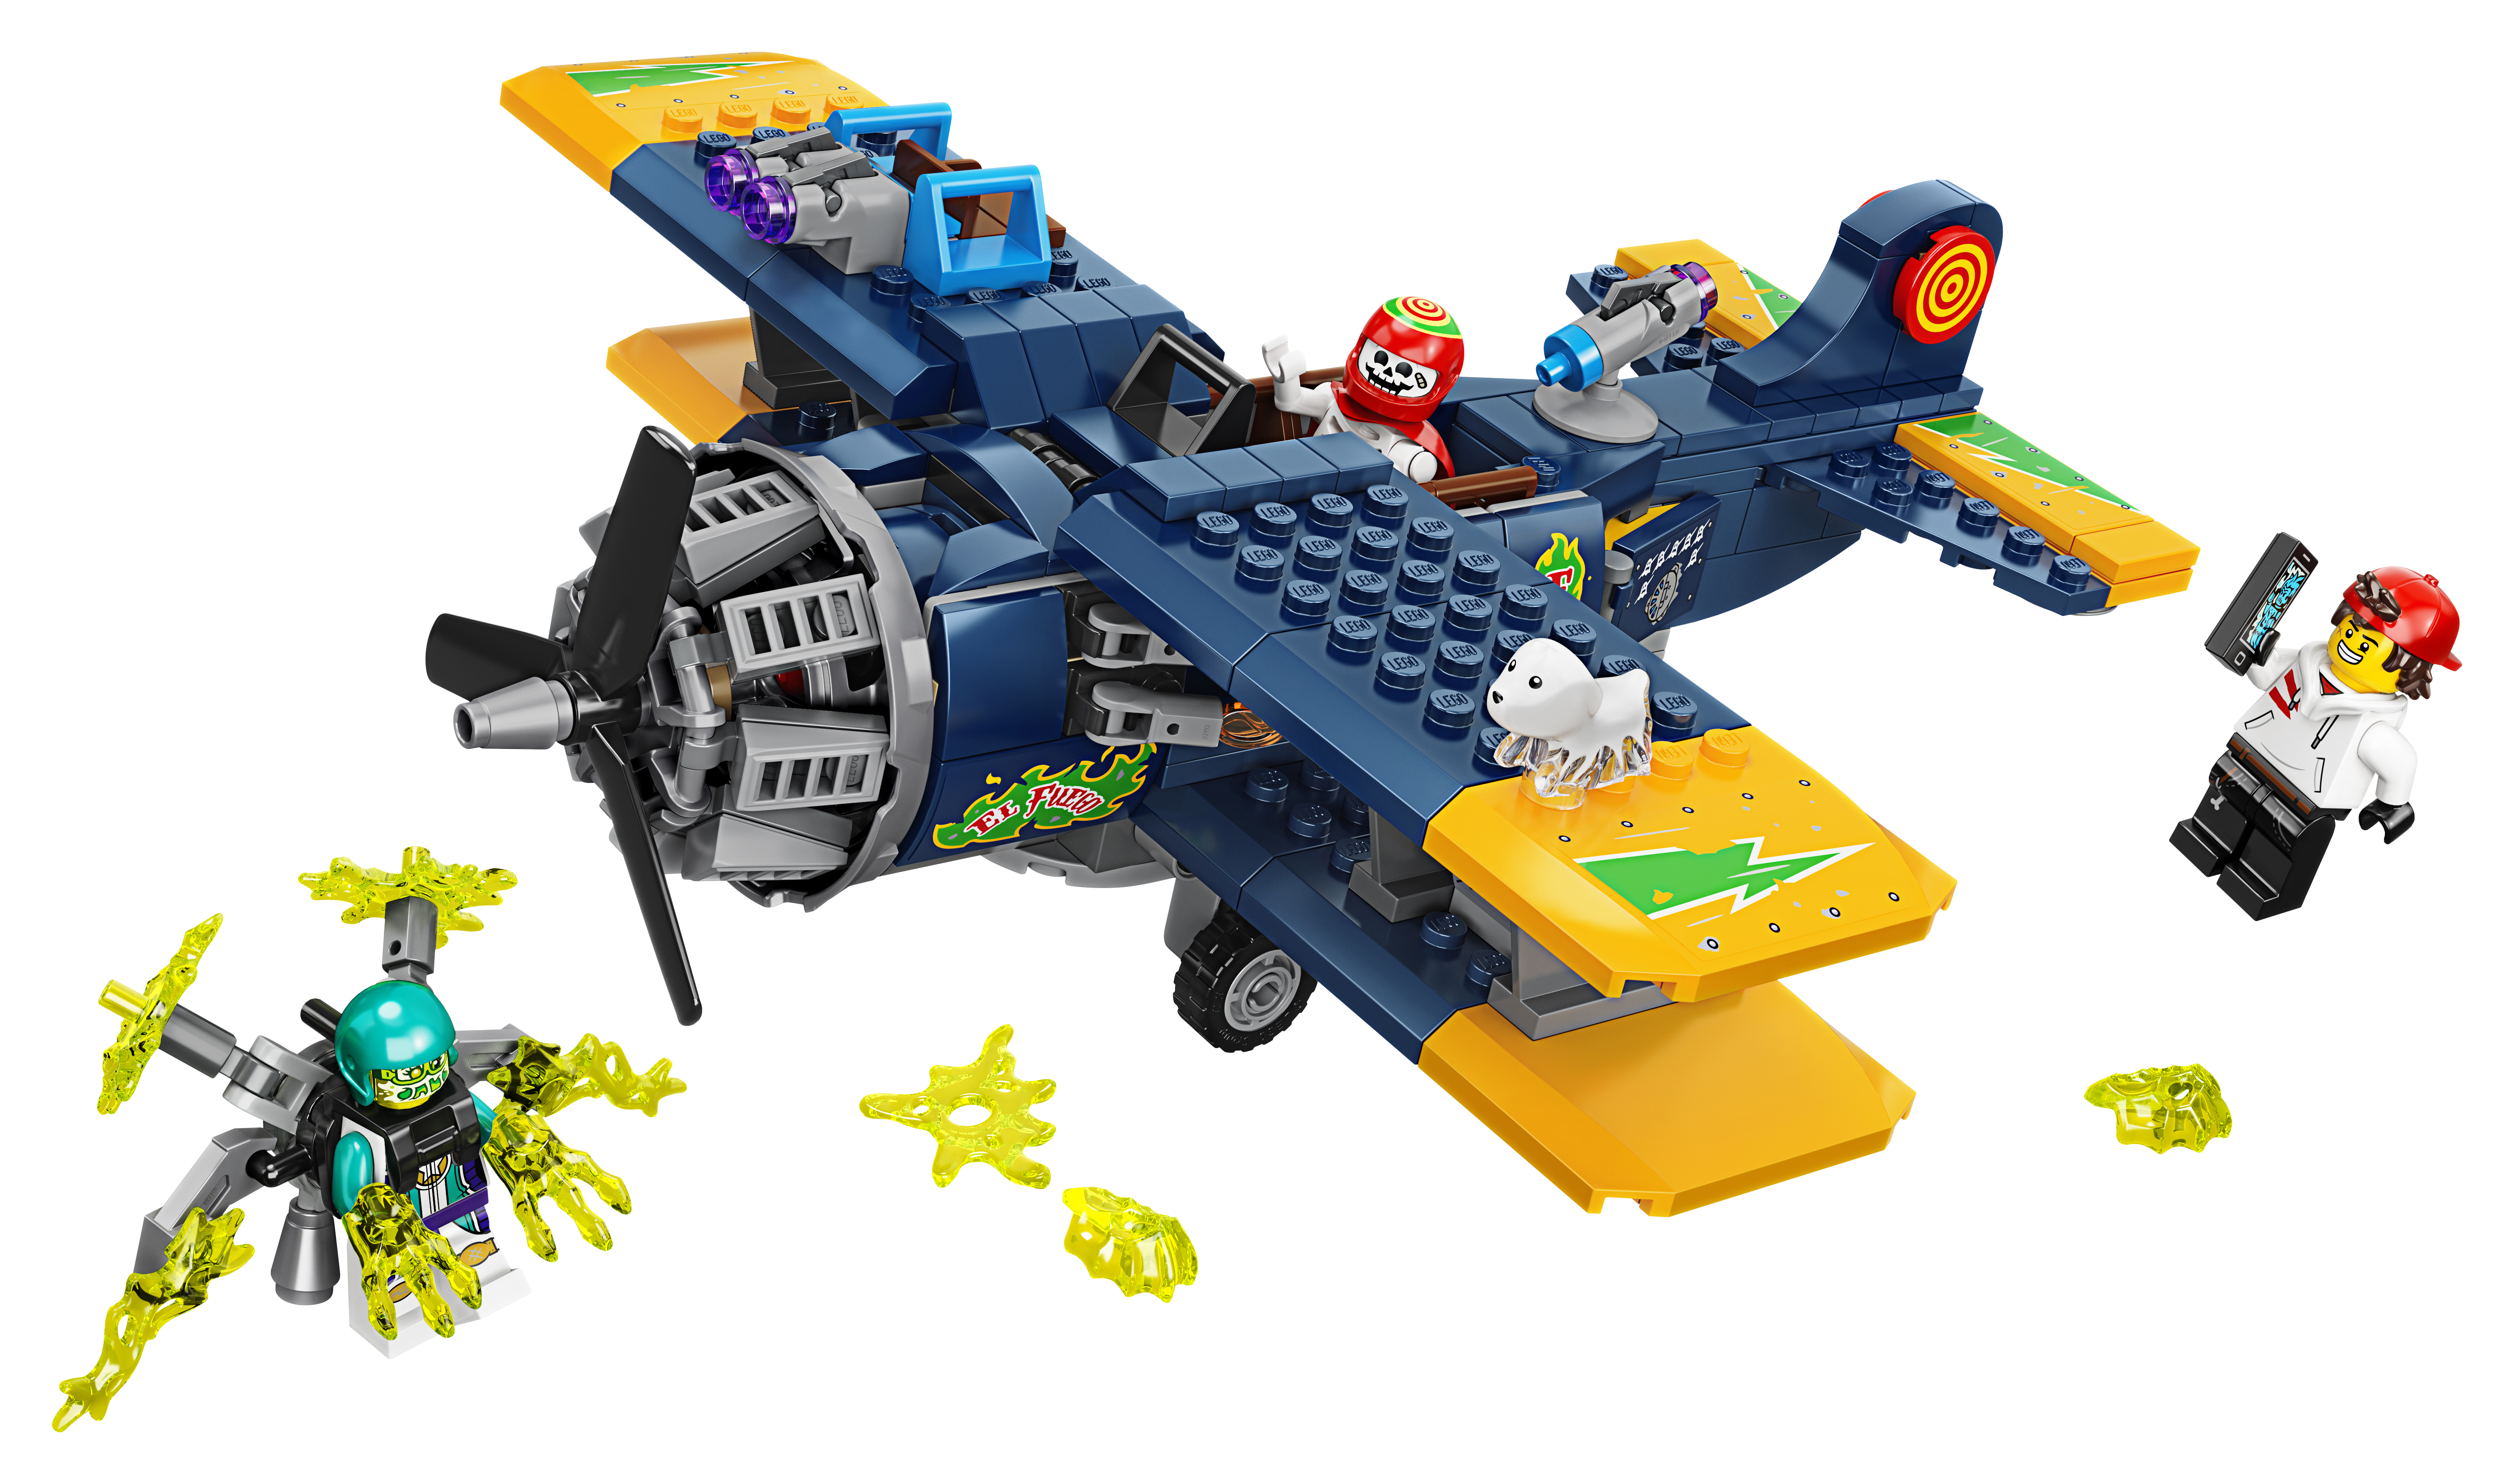 LEGO Hidden Side El Fuegos Stunt-Flugzeug - 70429